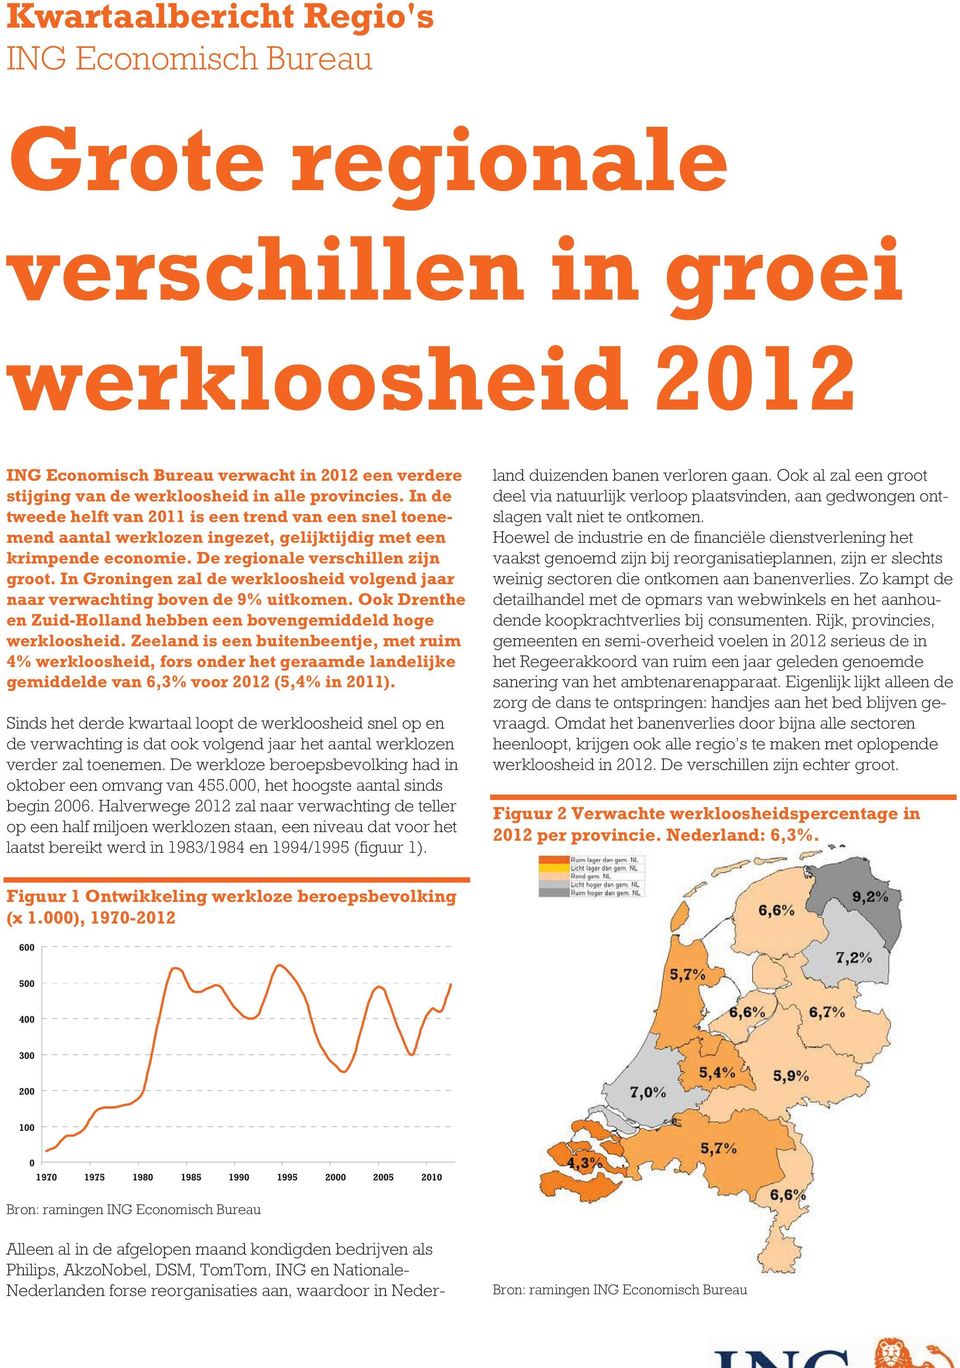 In Groningen zal de werkloosheid volgend jaar naar verwachting boven de 9% uitkomen. Ook Drenthe en Zuid-Holland hebben een bovengemiddeld hoge werkloosheid.